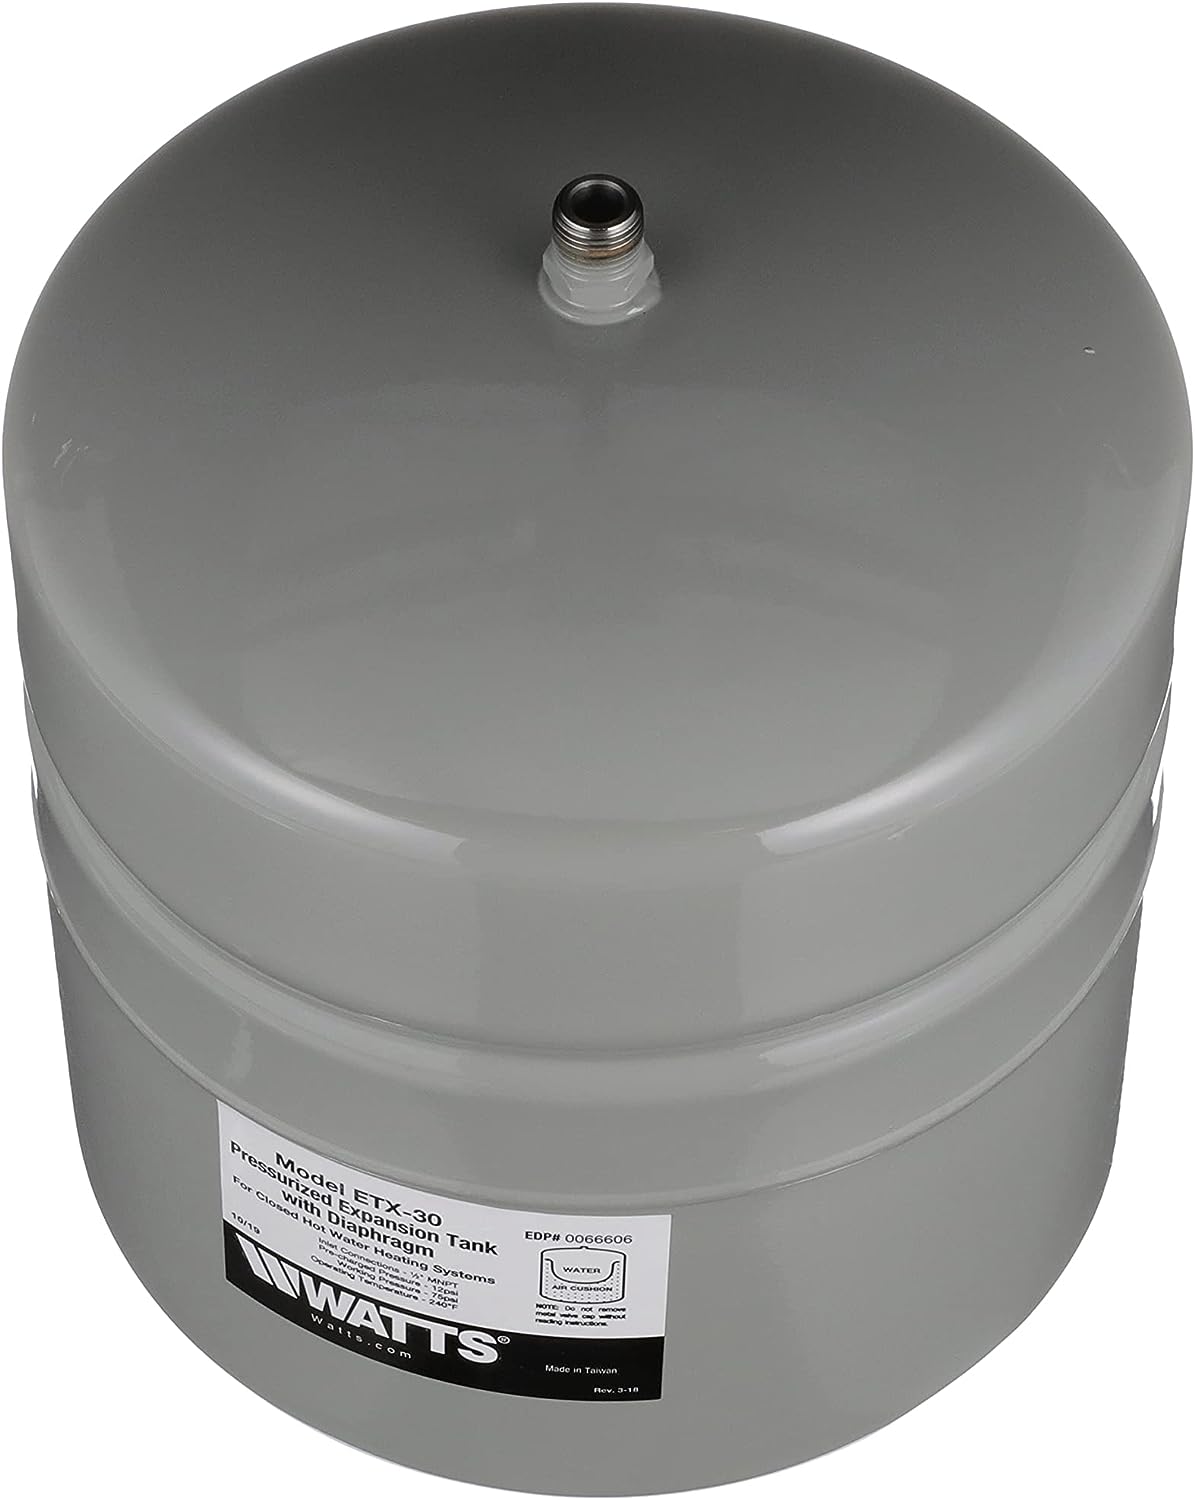 Watts ETX-30 Tanque de expansión de agua no potable Conexión MNPT de 1/2 pulg., 4.5 galones, Gris